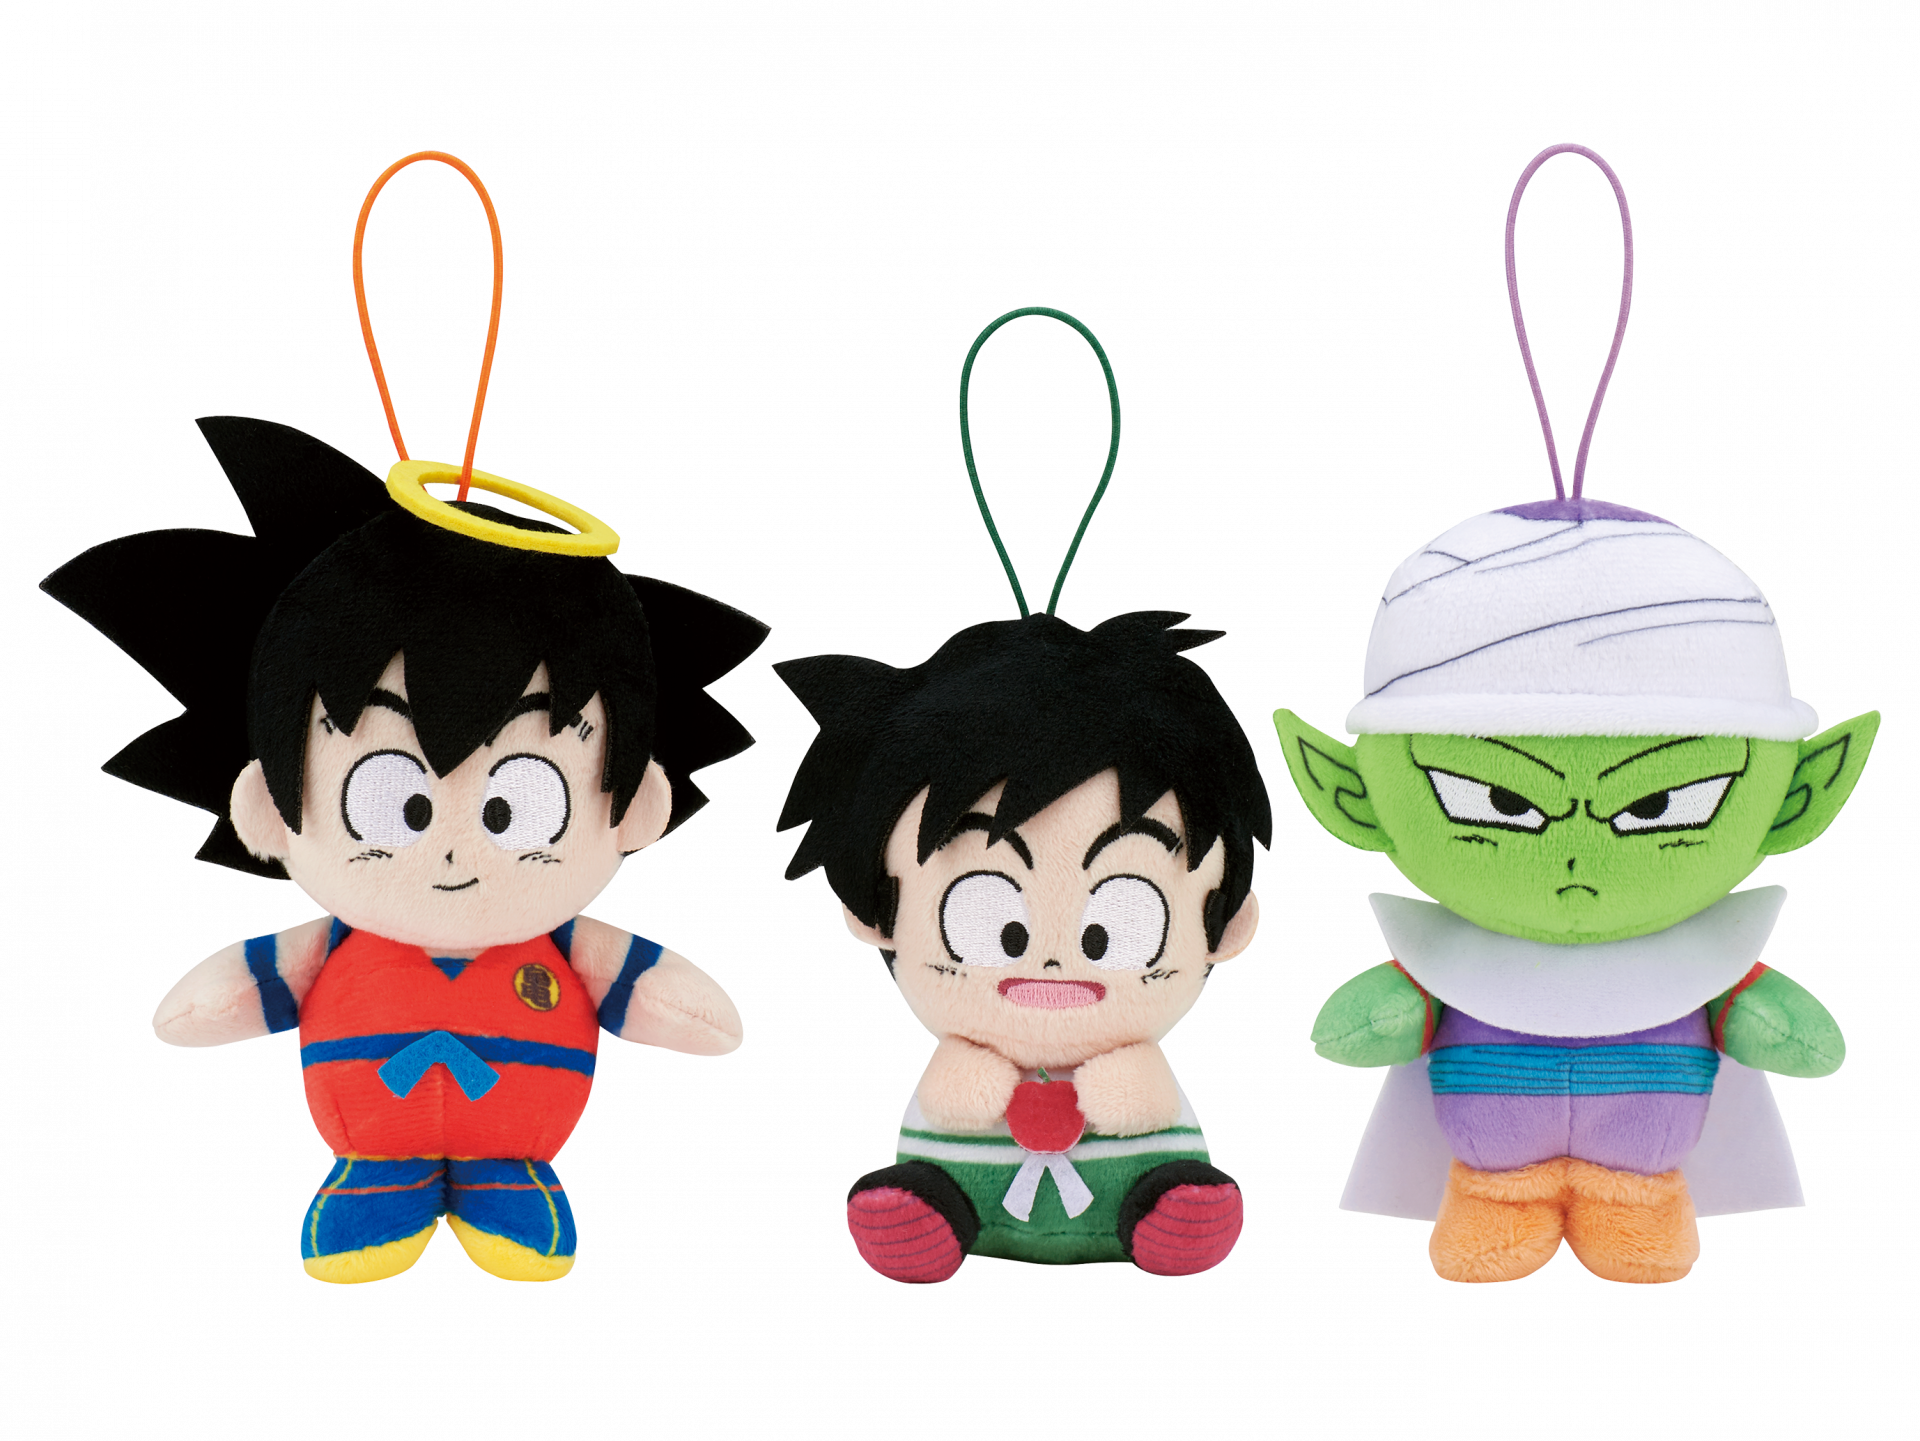 Die handtellergroßen Plüschtiere Goku, Gohan und Piccolo kommen zu Crane Games!